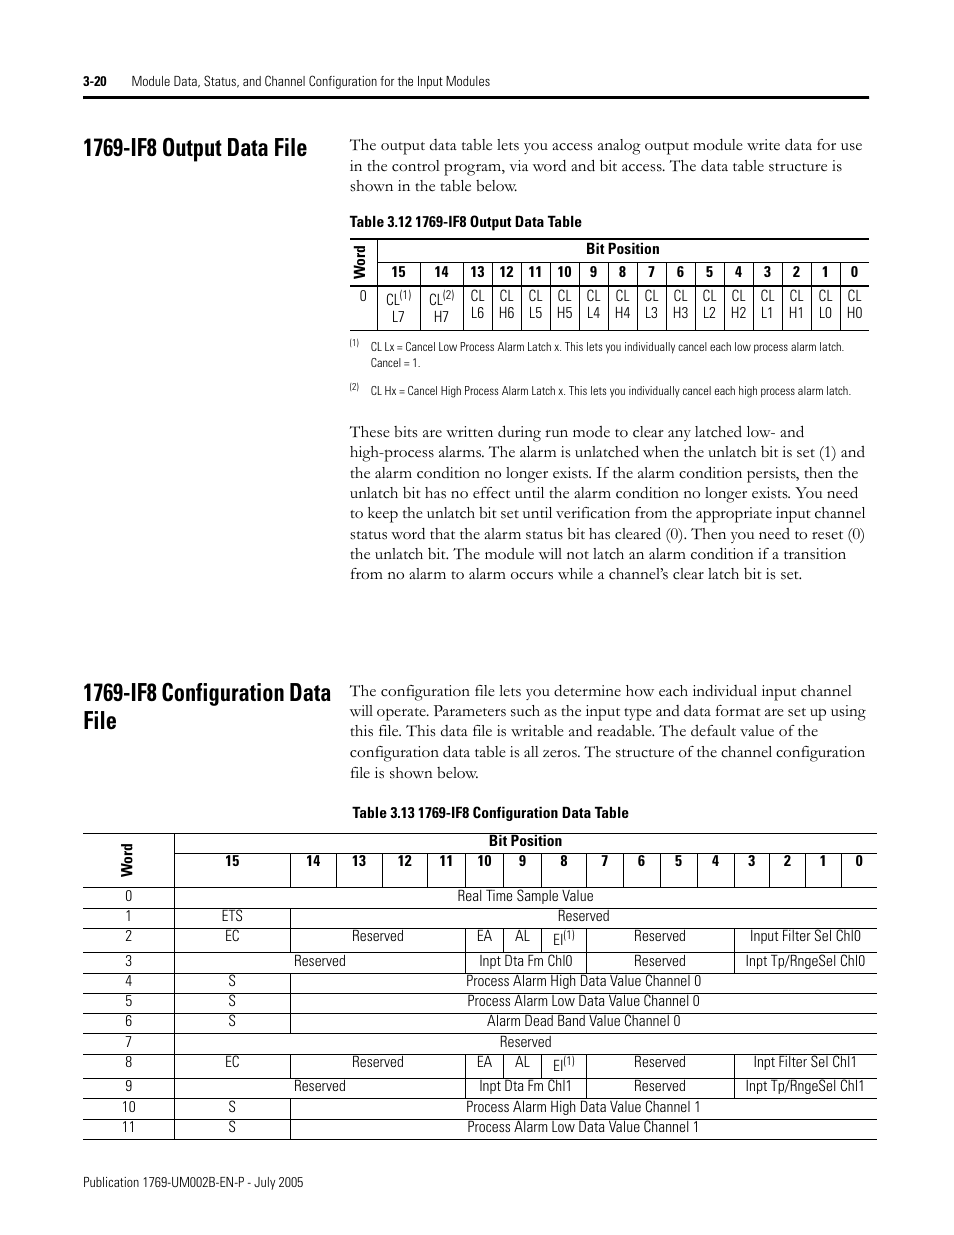 1769IF8 MANUAL PDF